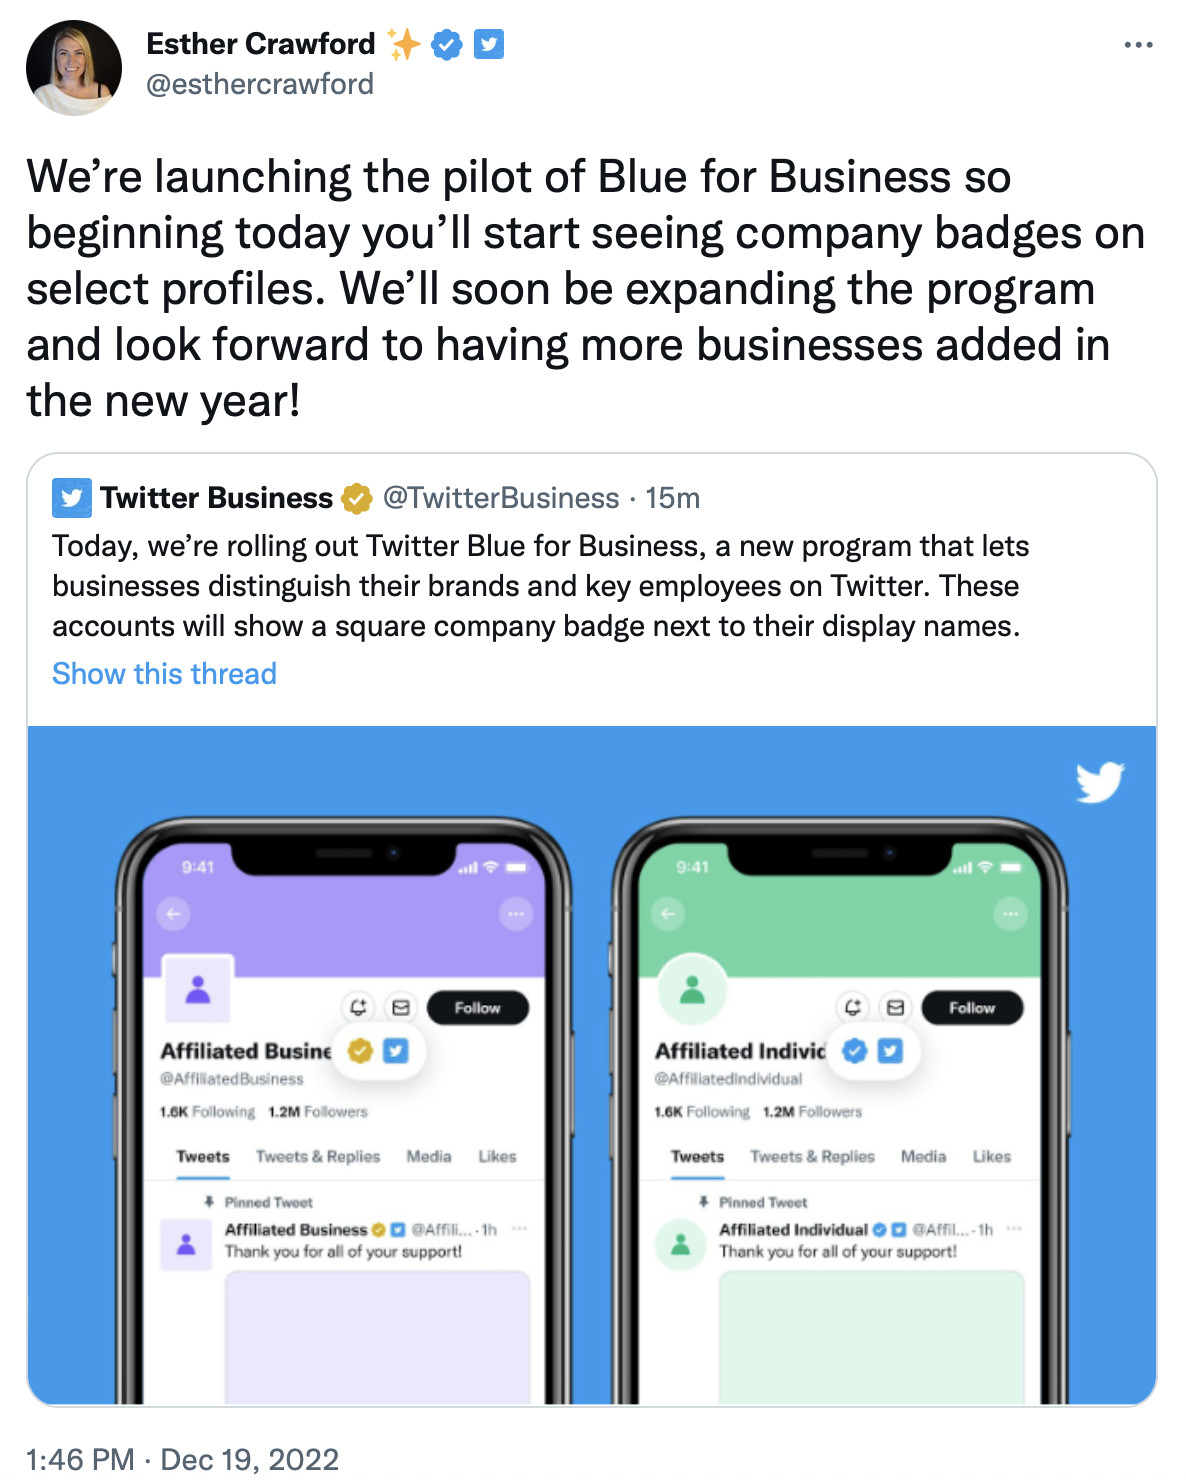 توییتر رسماً سرویس Blue for Business را معرفی کرده که ابزاری، برای شرکت‌هایی است که می‌خواهند برند خود را در توییتر تأیید و متمایز کنند.